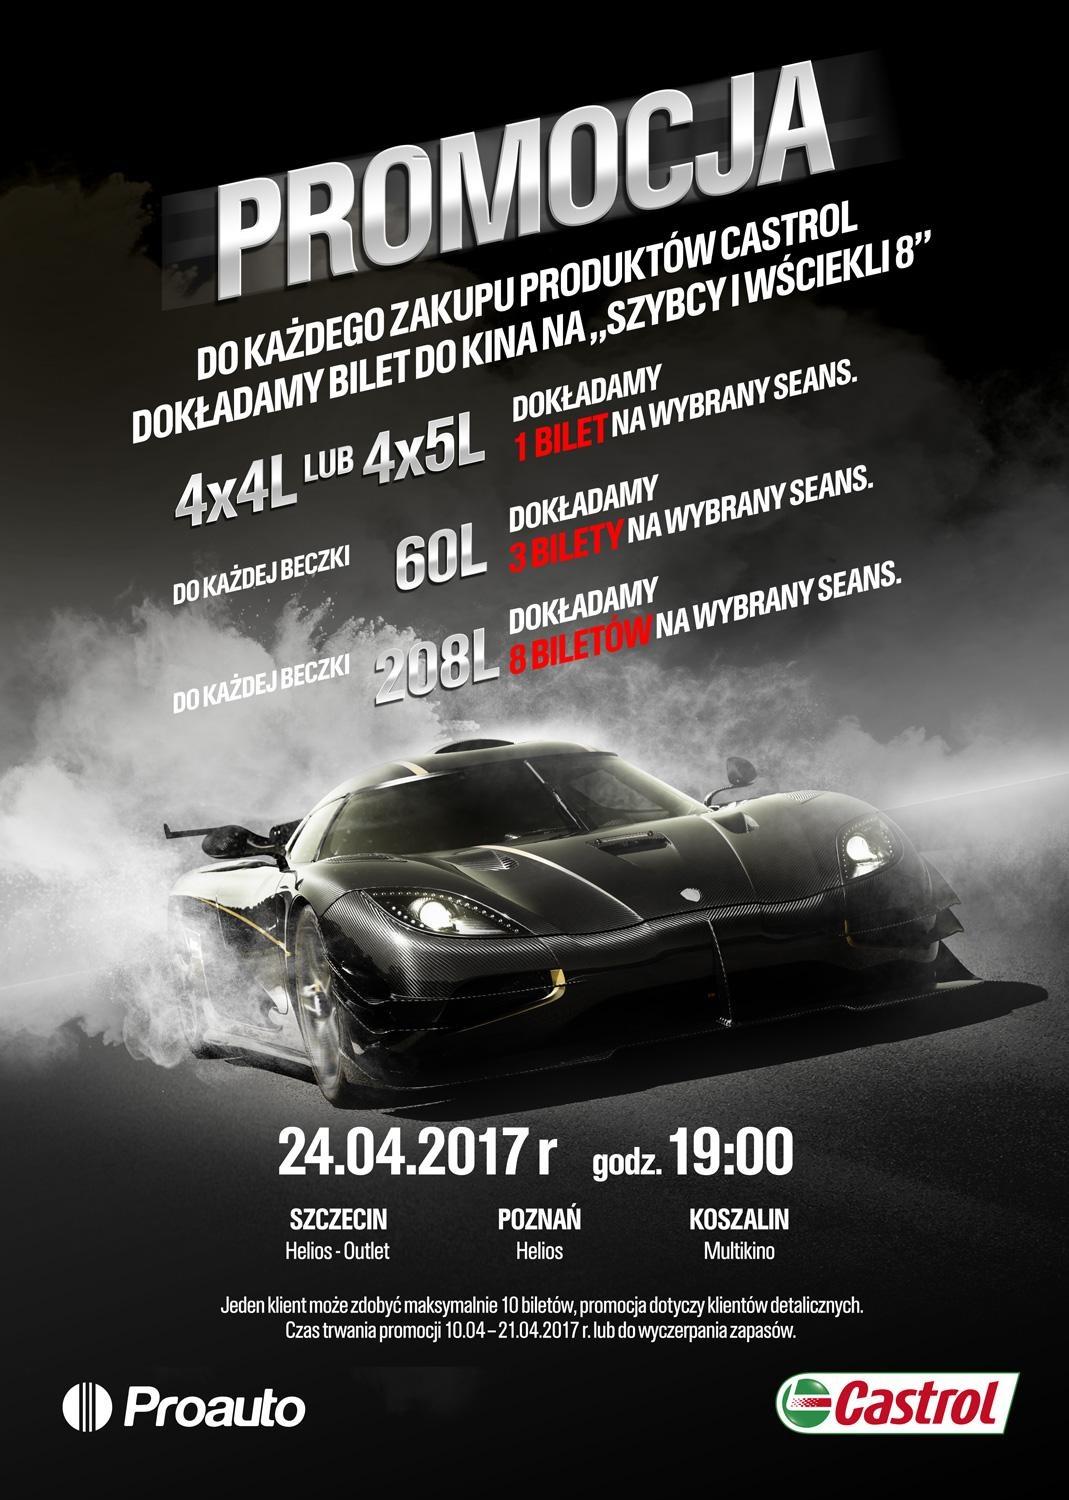 ulotka ff PROAUTO - Promocja Szybcy i Wściekli 8 powered by Castrol